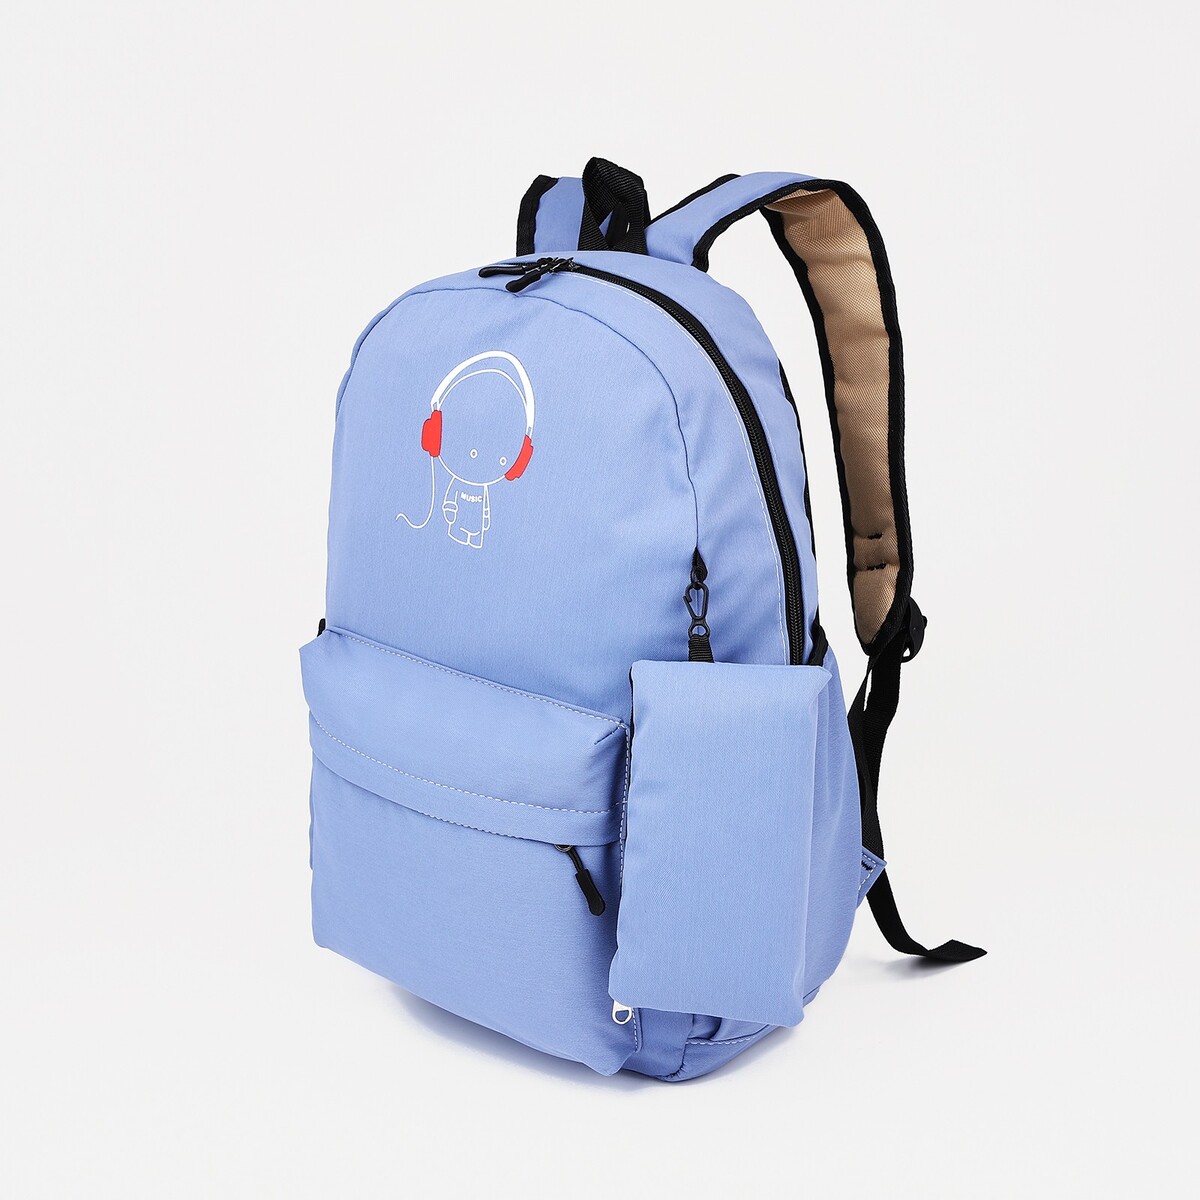 Рюкзак школьный из текстиля на молнии, 3 кармана, кошелек, цвет сиреневый